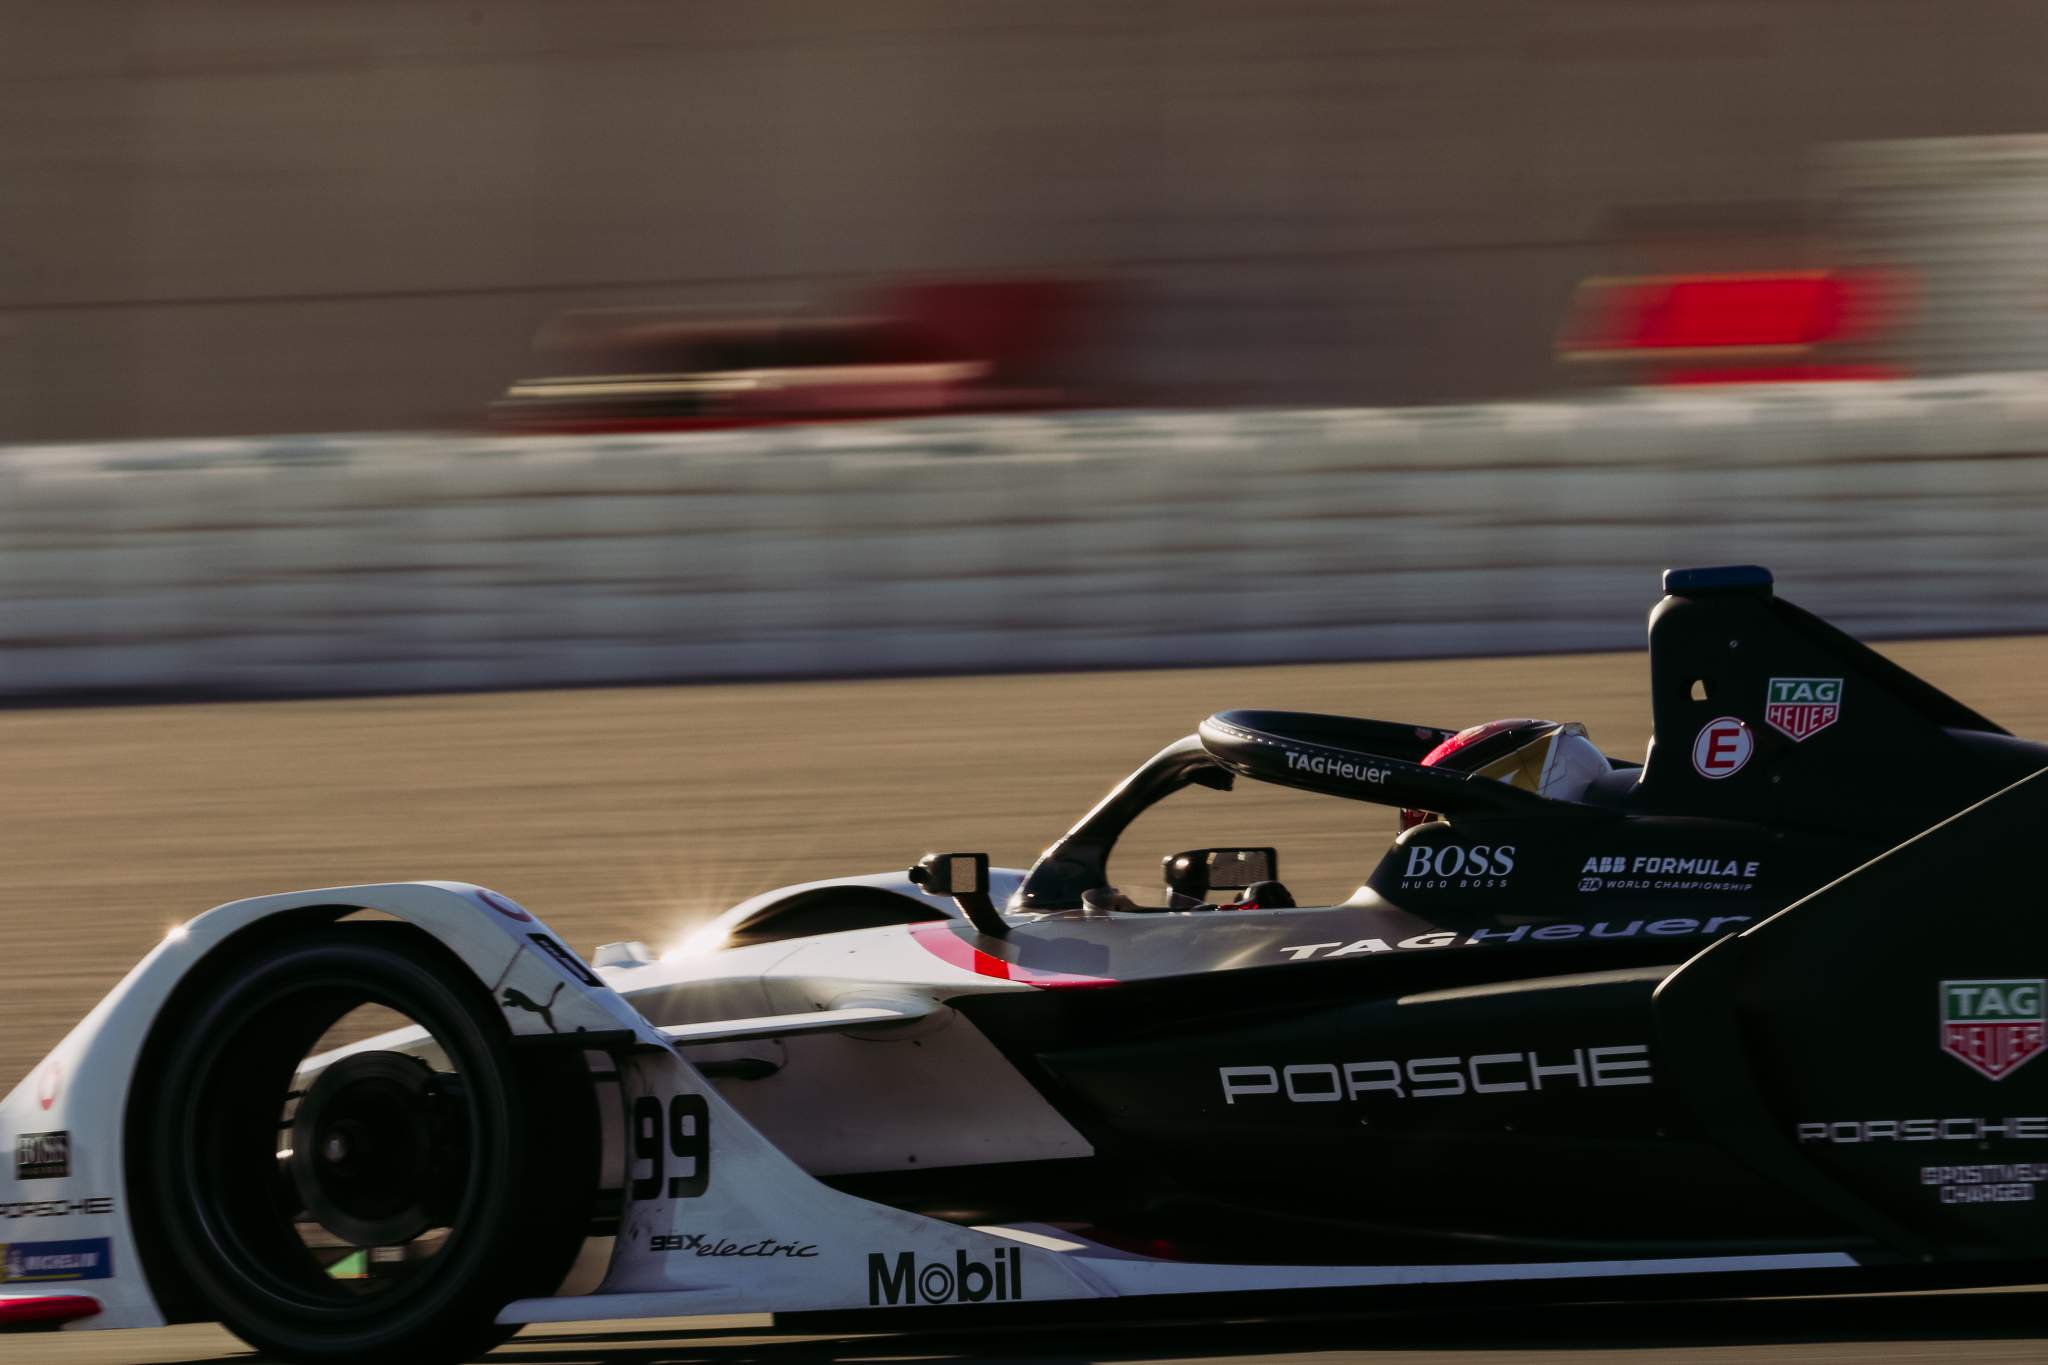 Pascal Wehrlein Porsche Valencia Formula E test 2020